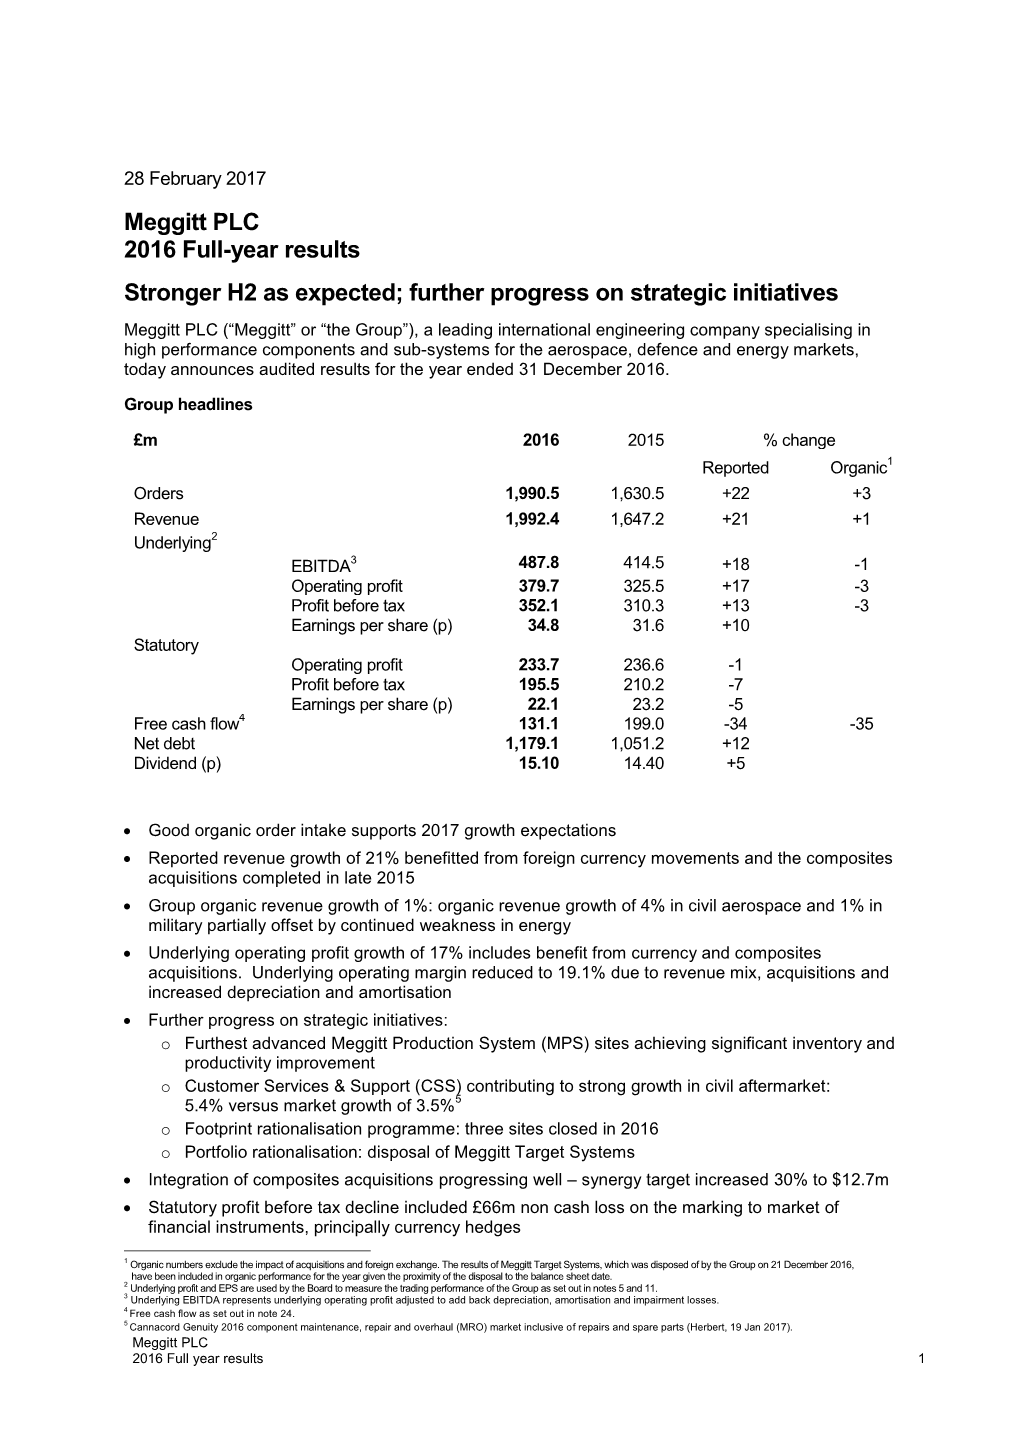 Meggitt PLC 2016 Full-Year Results Stronger H2 As Expected